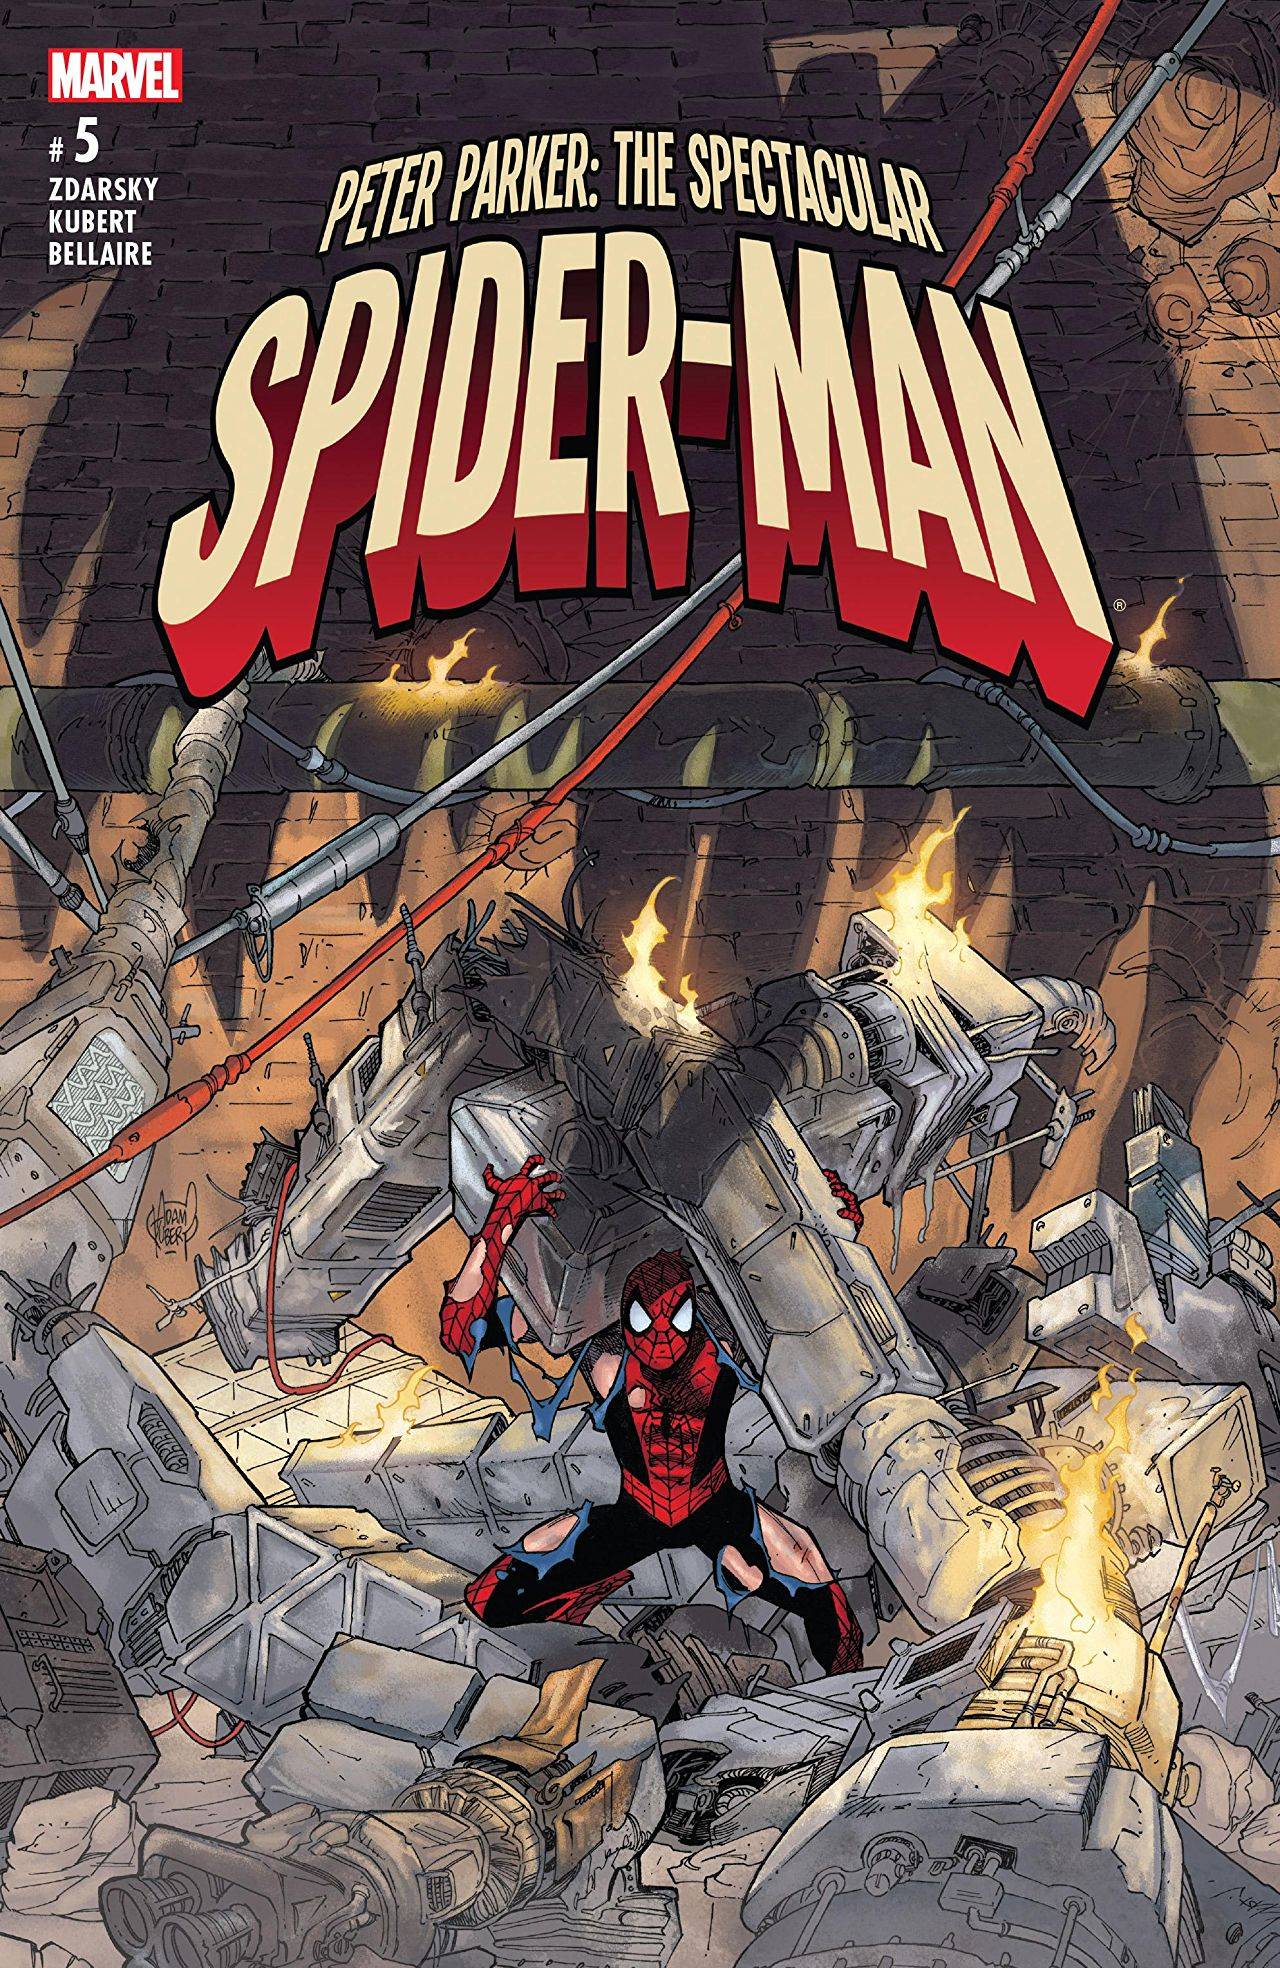 PETER PARKER SPECTACULAR SPIDER-MAN #5 2017